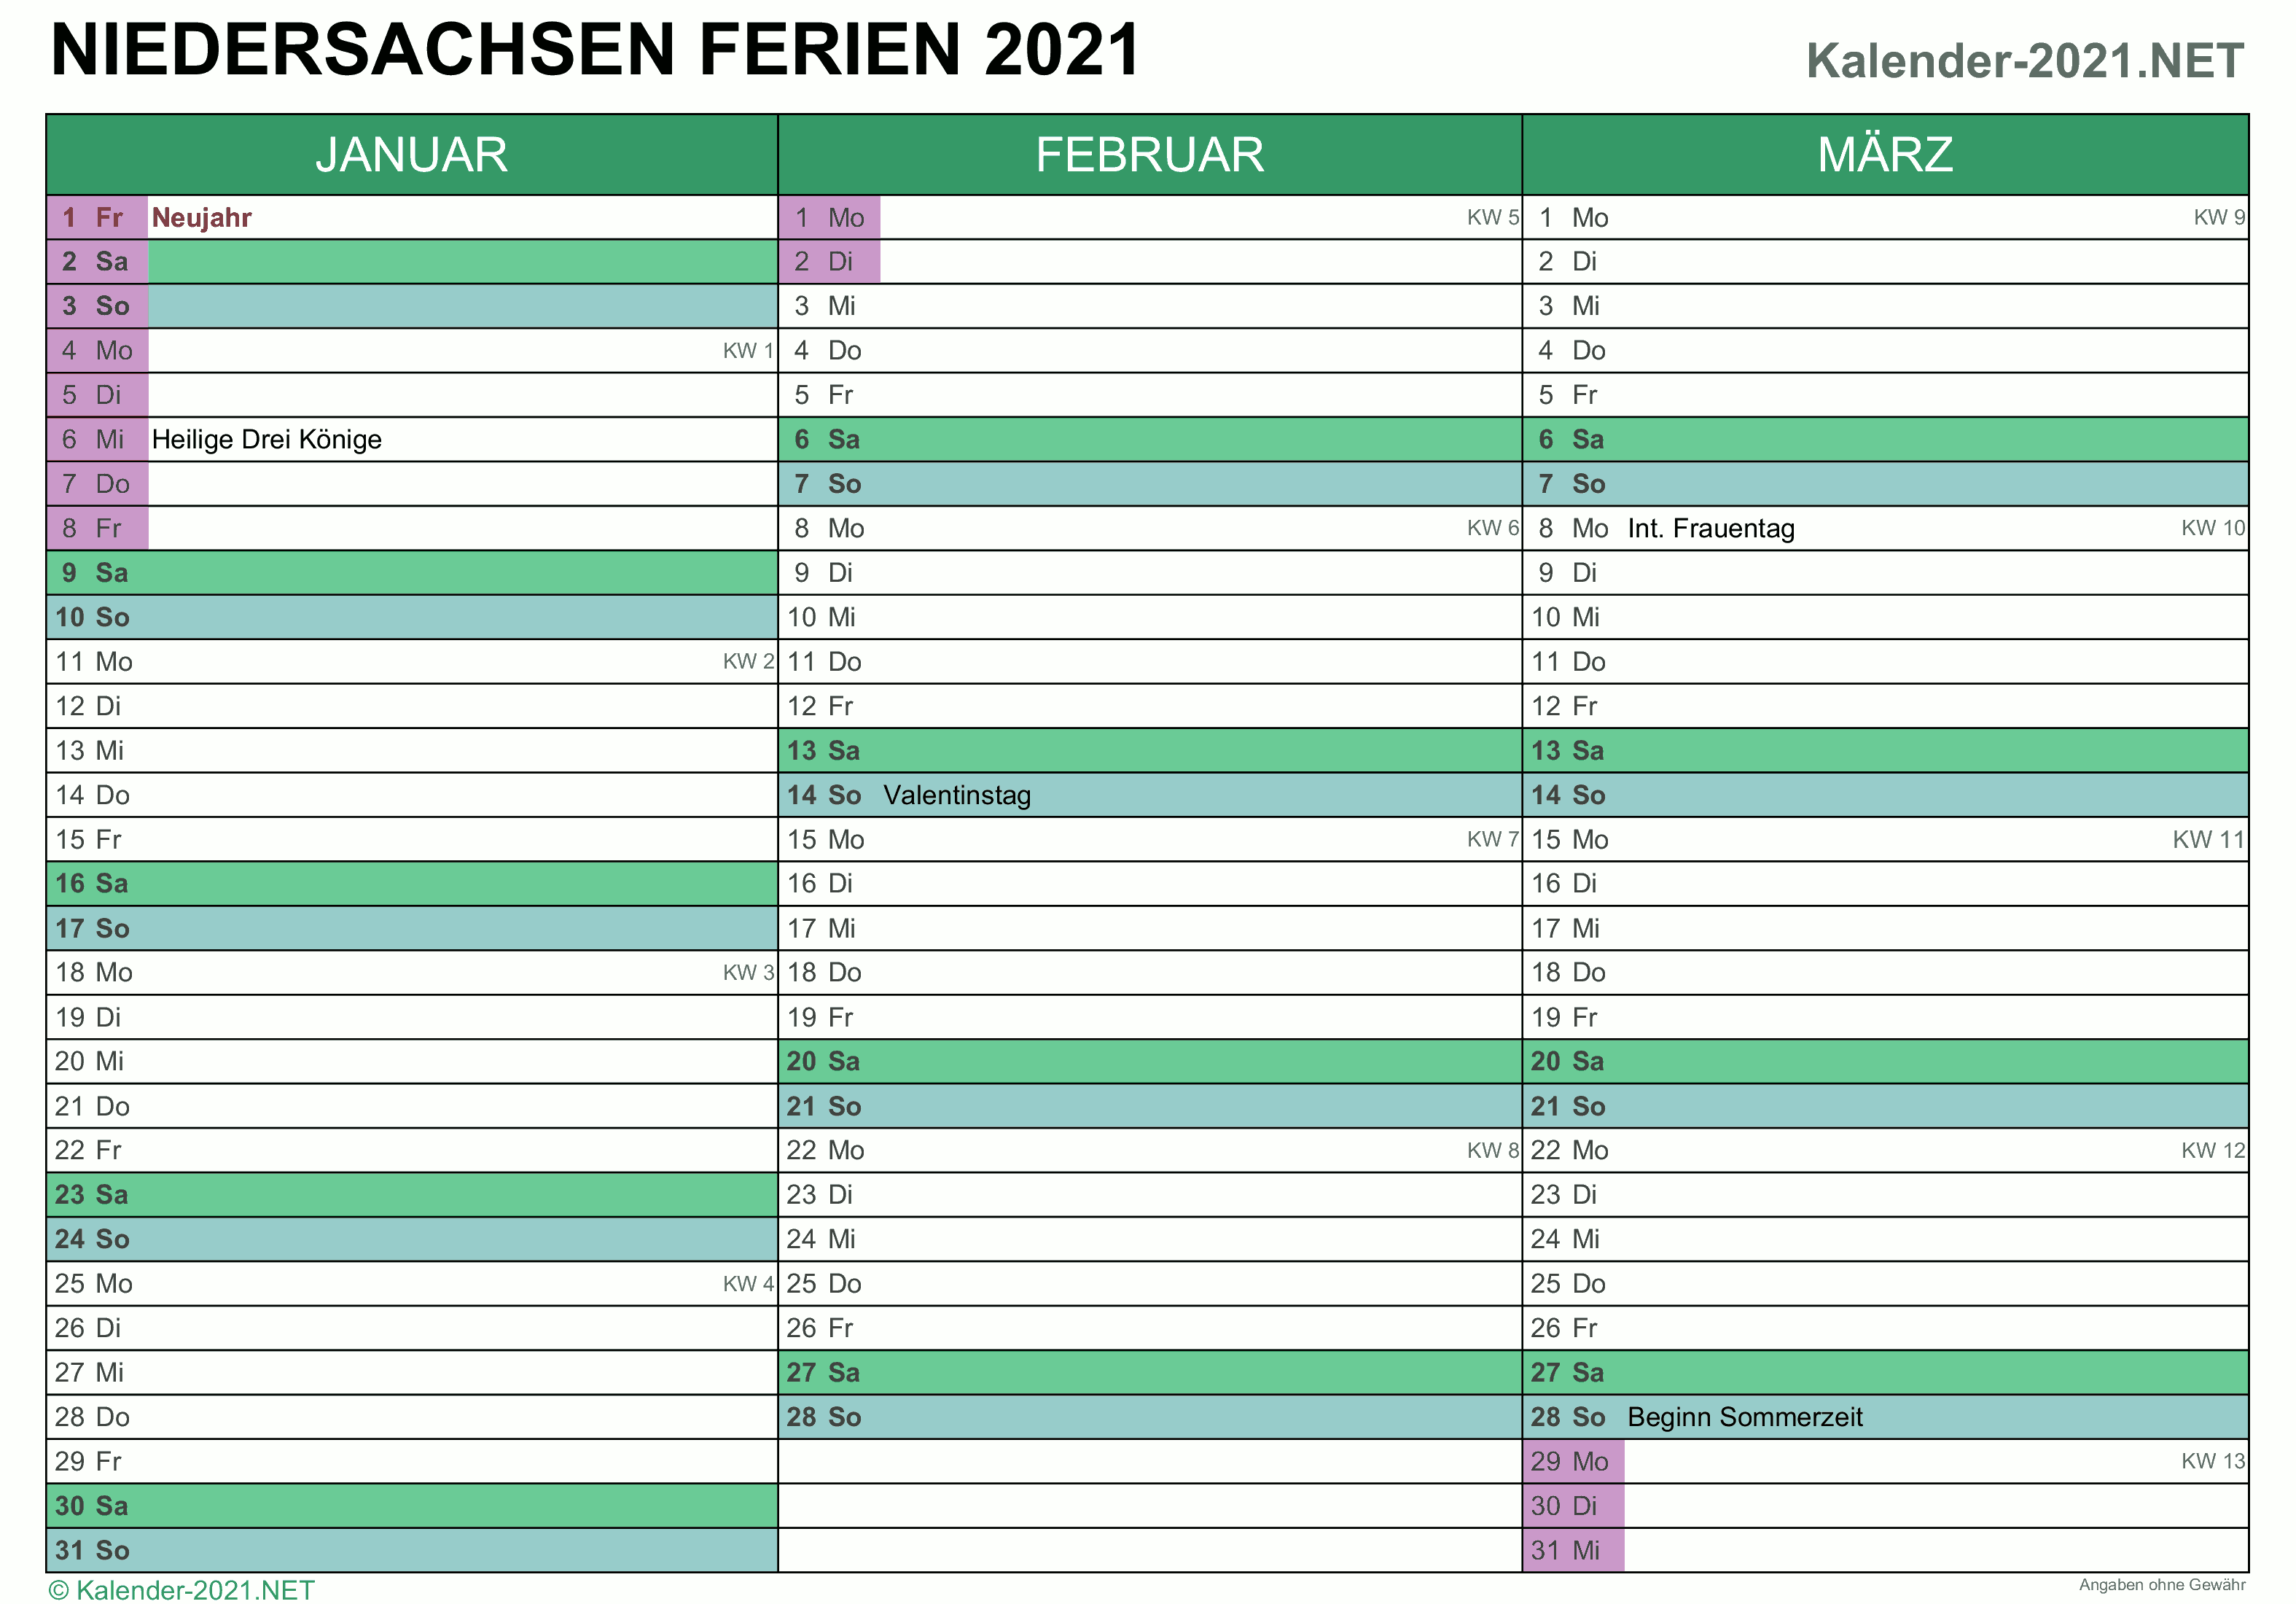 FERIEN Niedersachsen 2021 - Ferienkalender & Übersicht